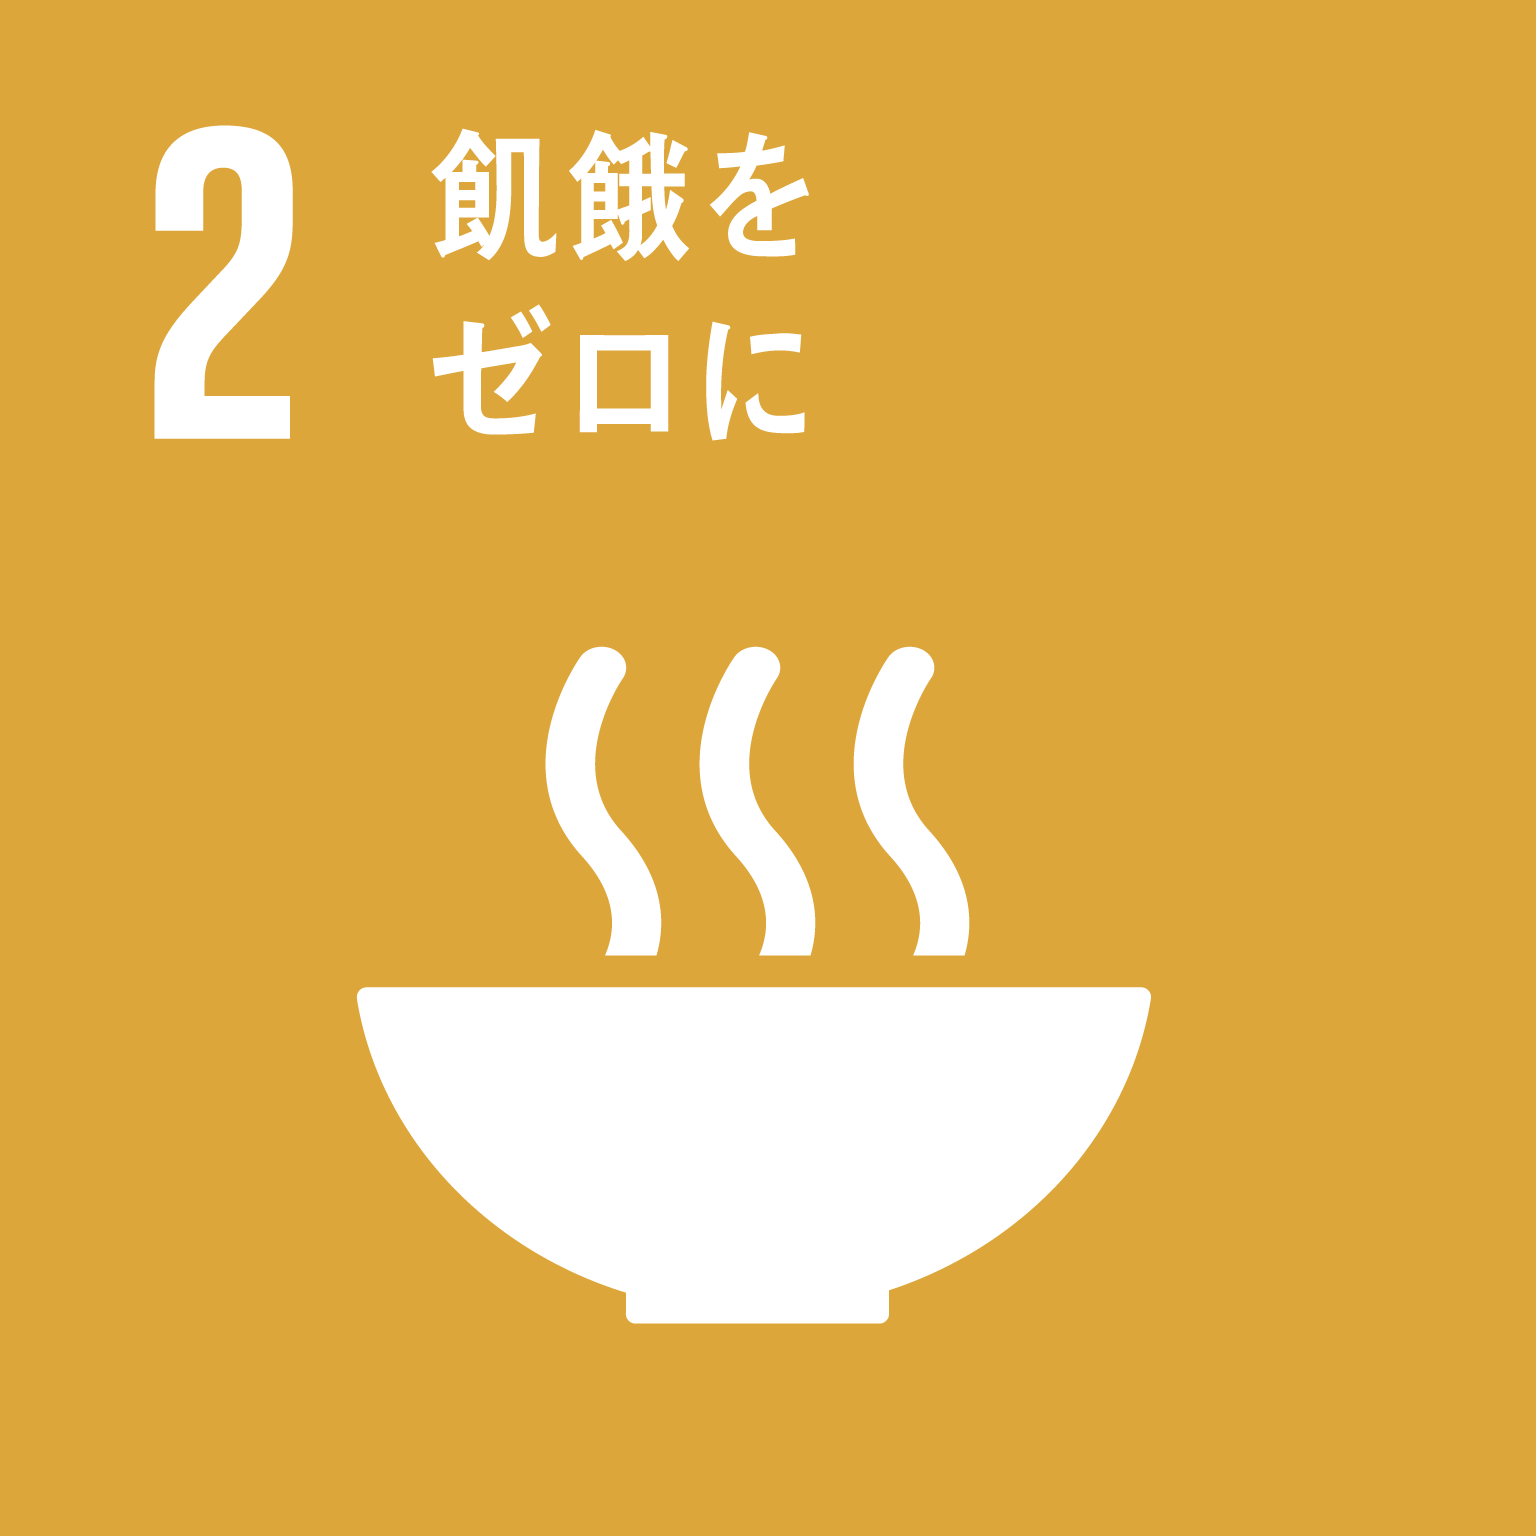 「2.飢餓をゼロに」の文字と目標2のロゴ